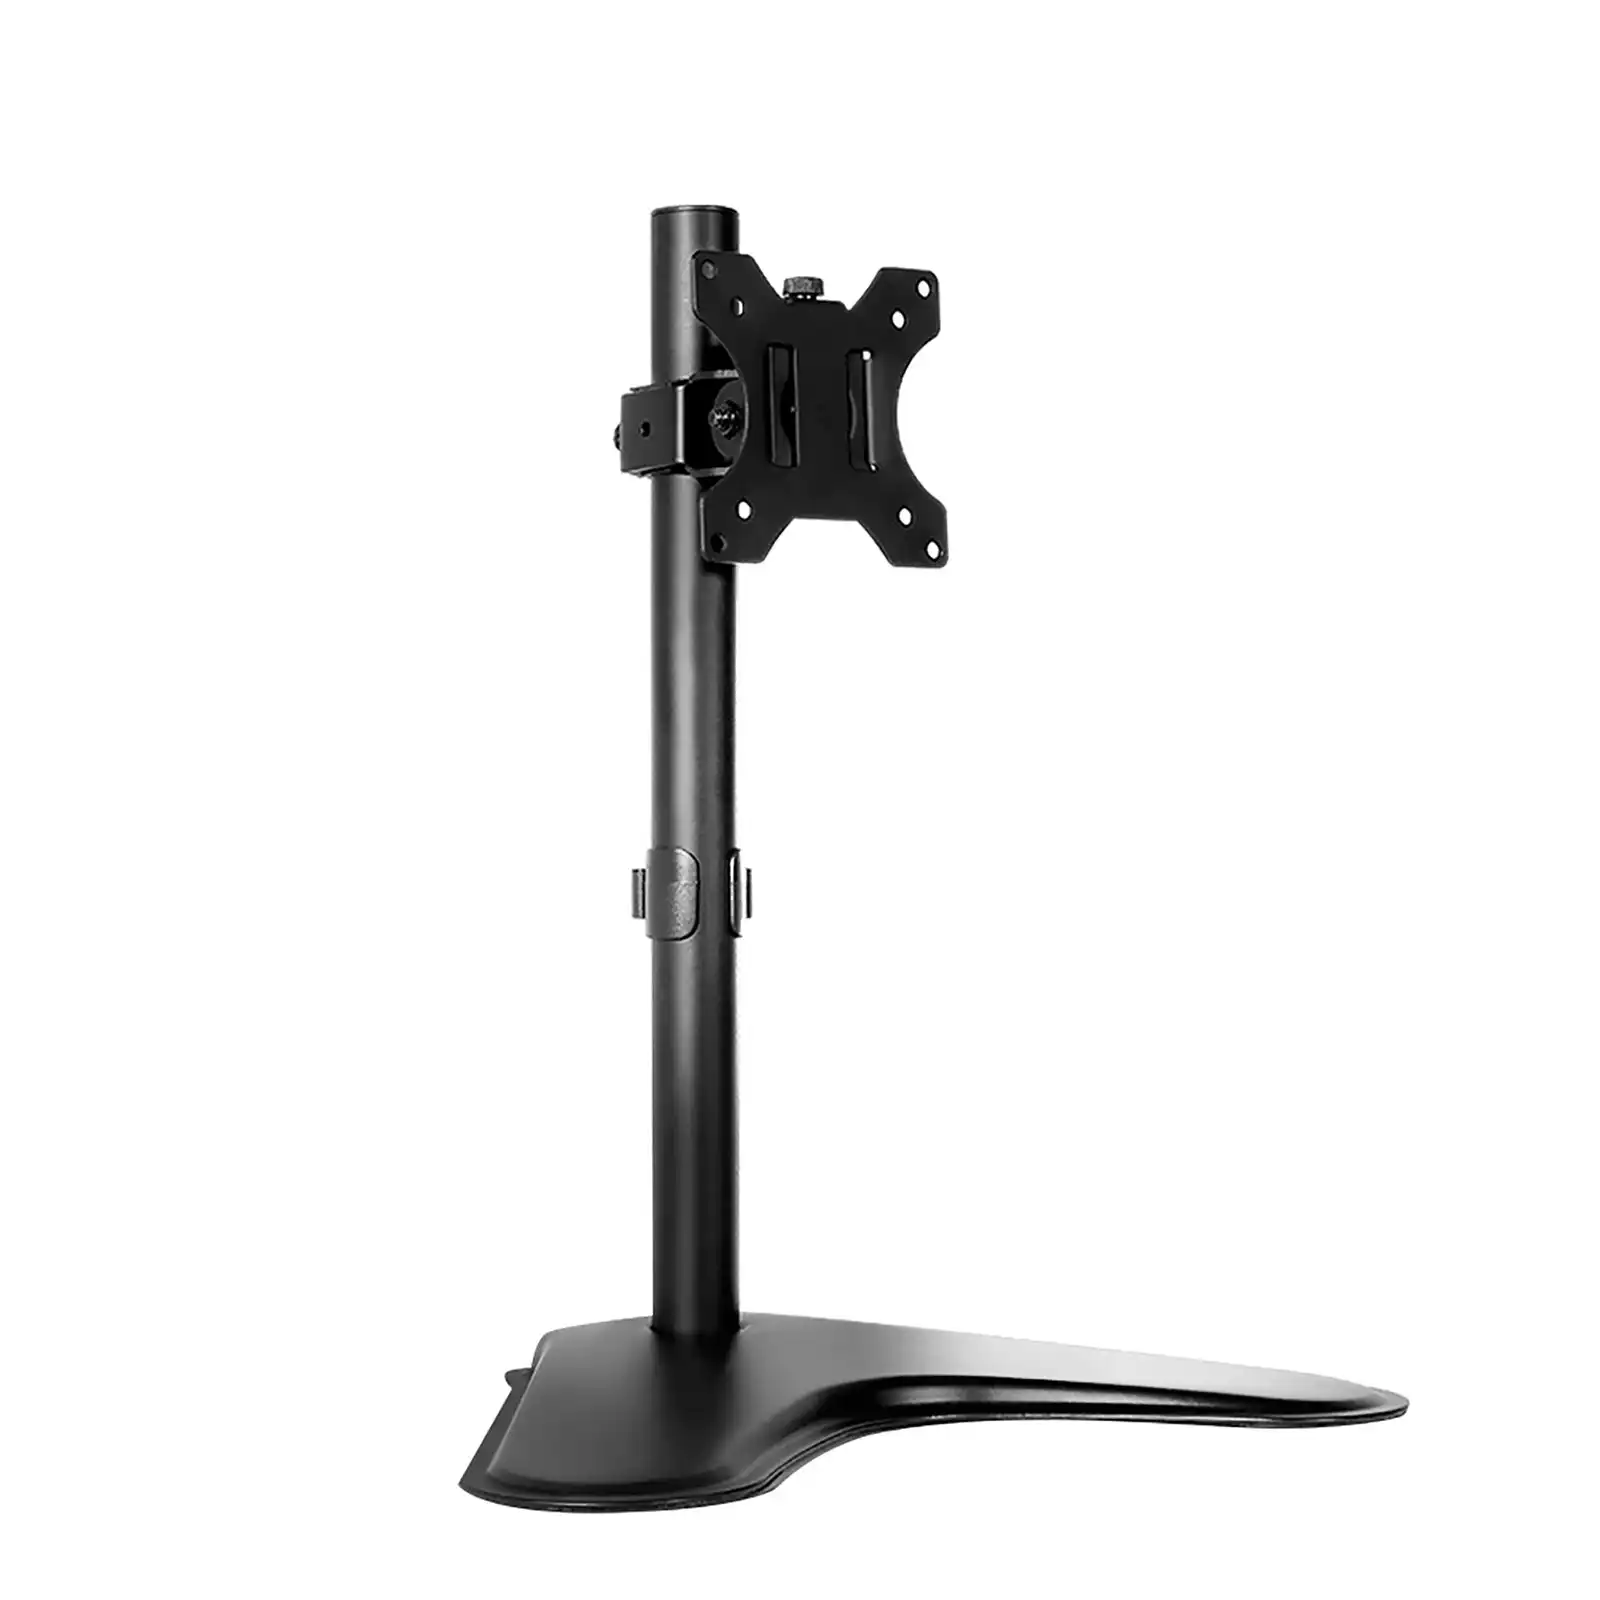 Artiss Monitor Stand Arm Desk Single HD LED TV Mount Bracket Holder Freestanding